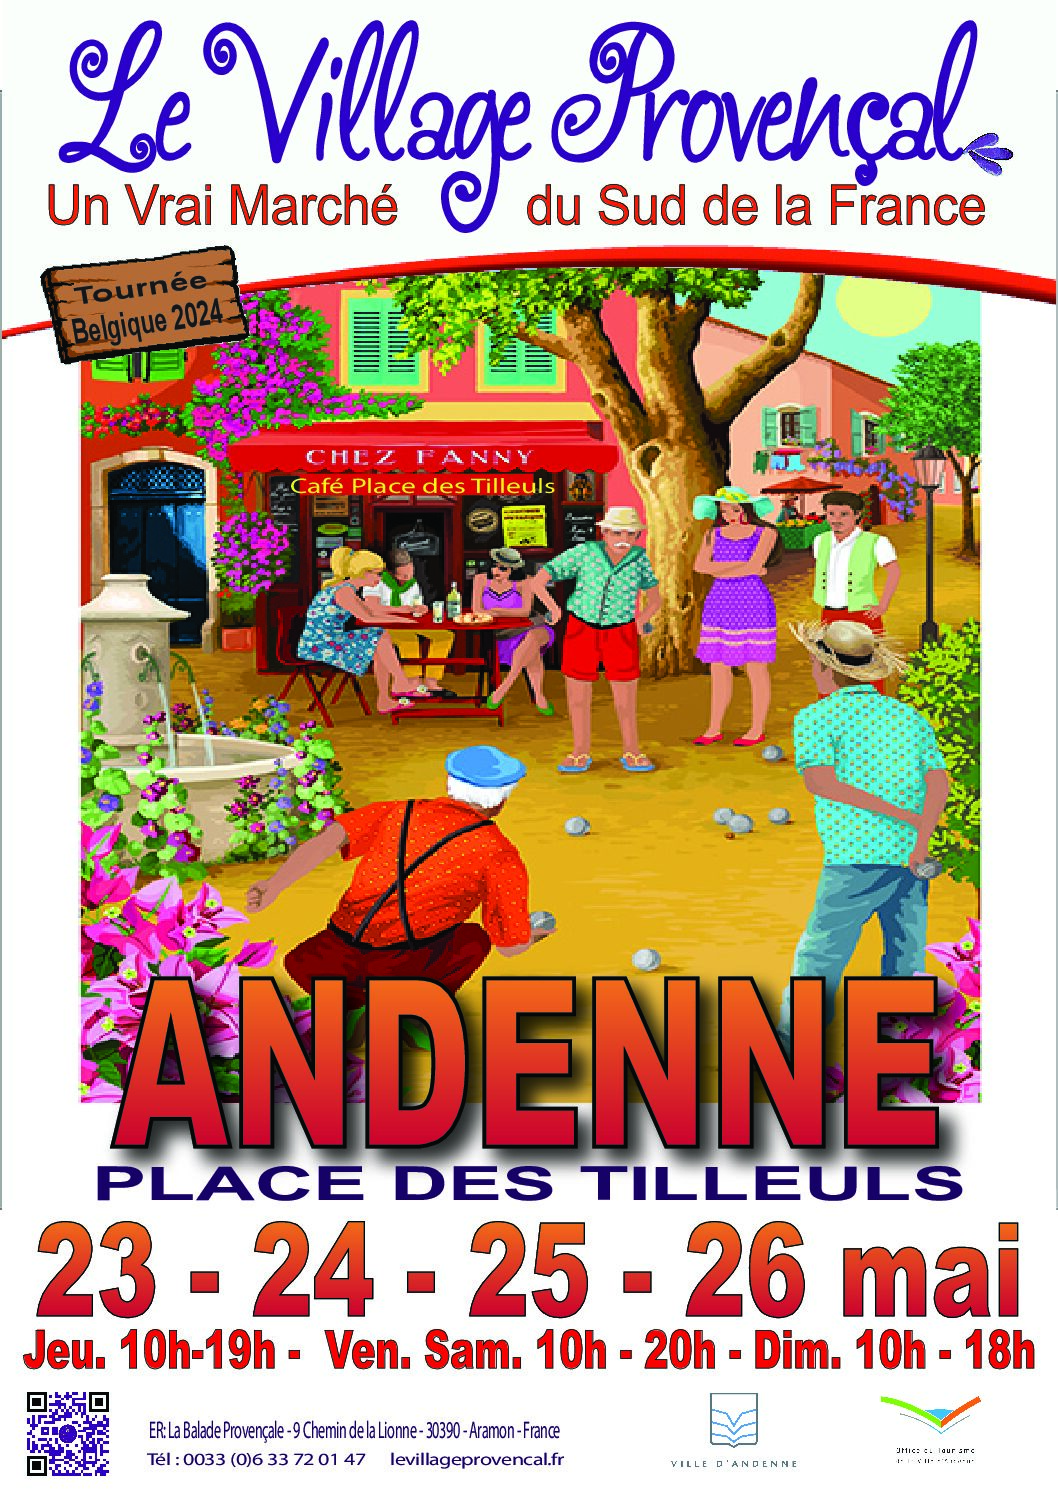 Andenne en Provence